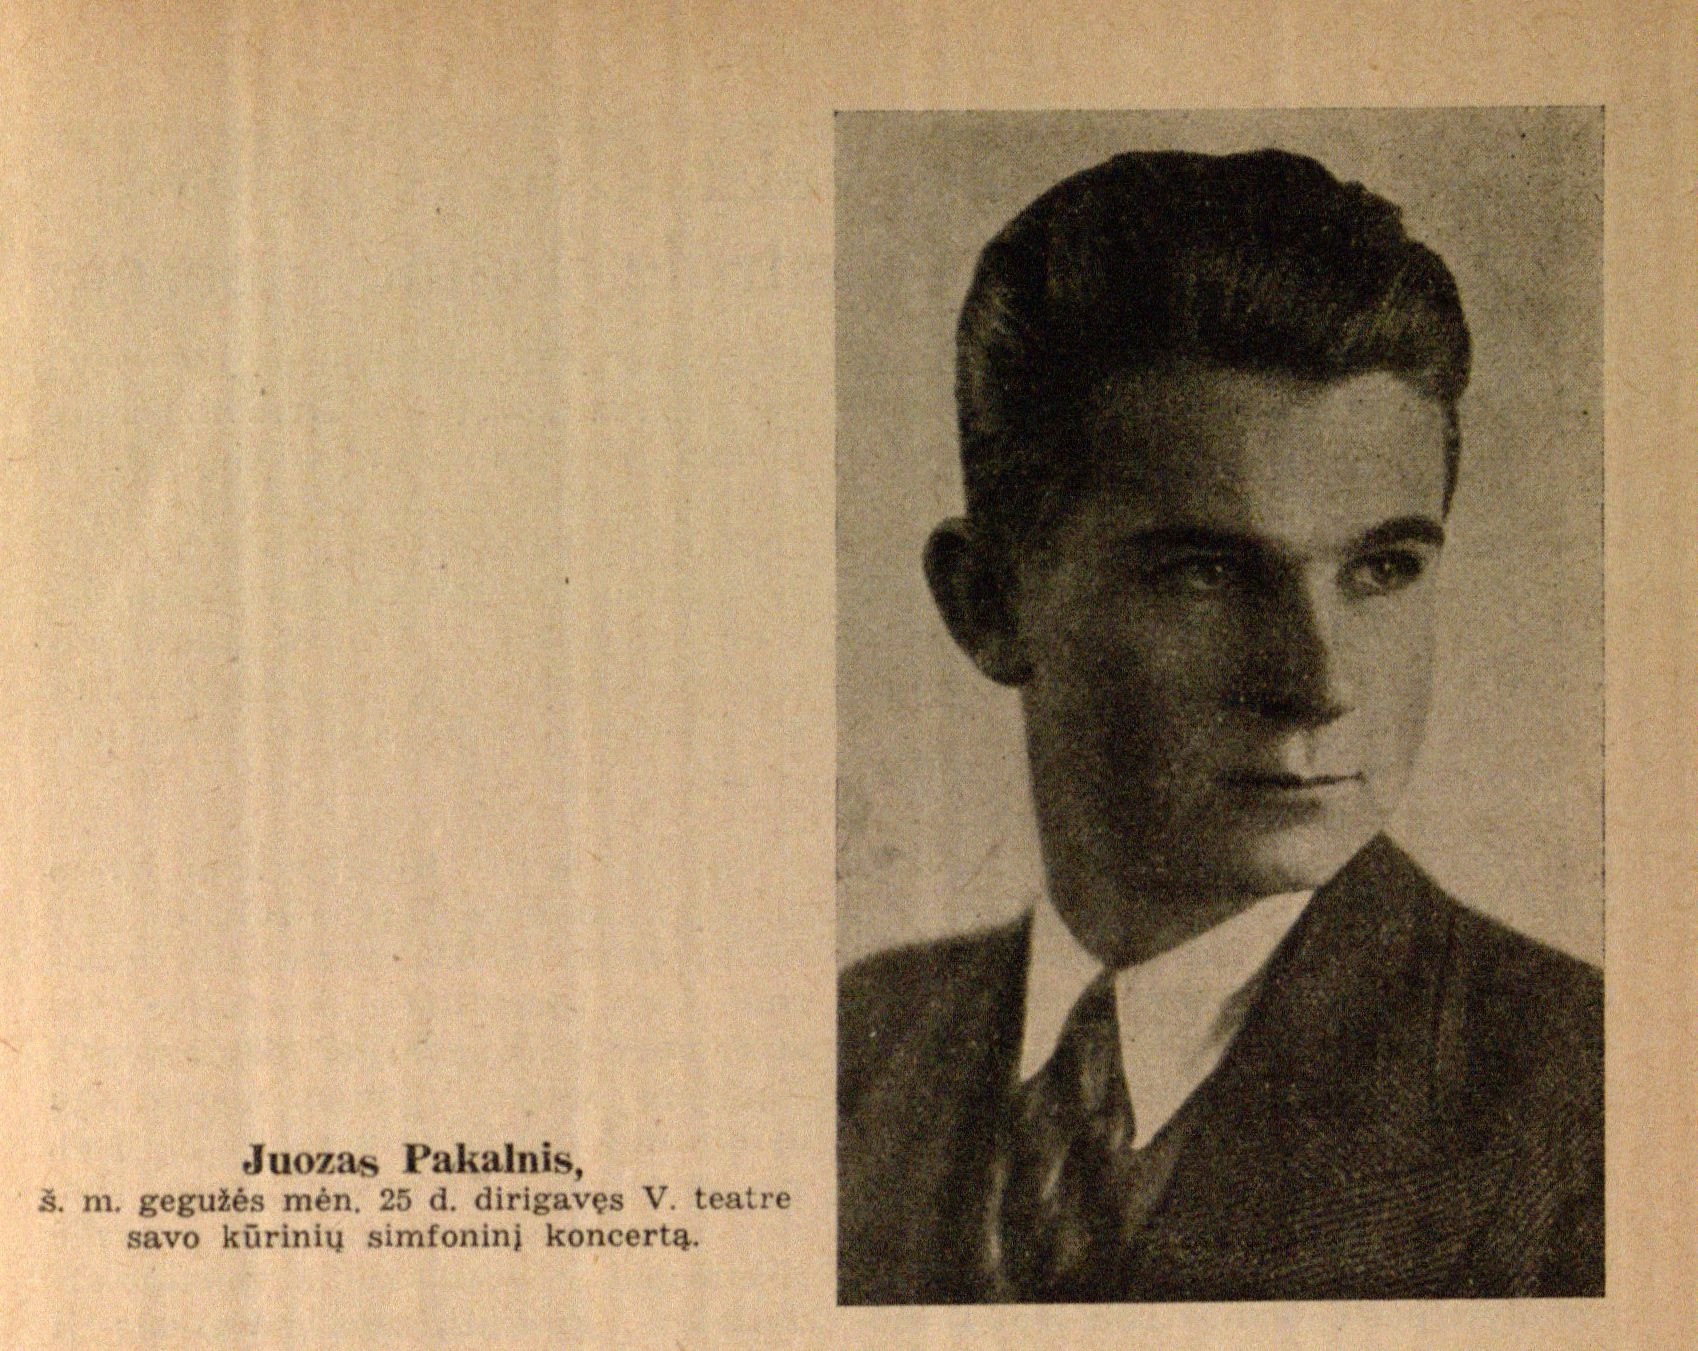 Juozas Pakalnis, š. m. gegužės mėn. 25 d. dirigavęs V. teatre savo kūrinių simfoninį koncertą // Meno dienos. – 1936, Nr. 23, p. 7.